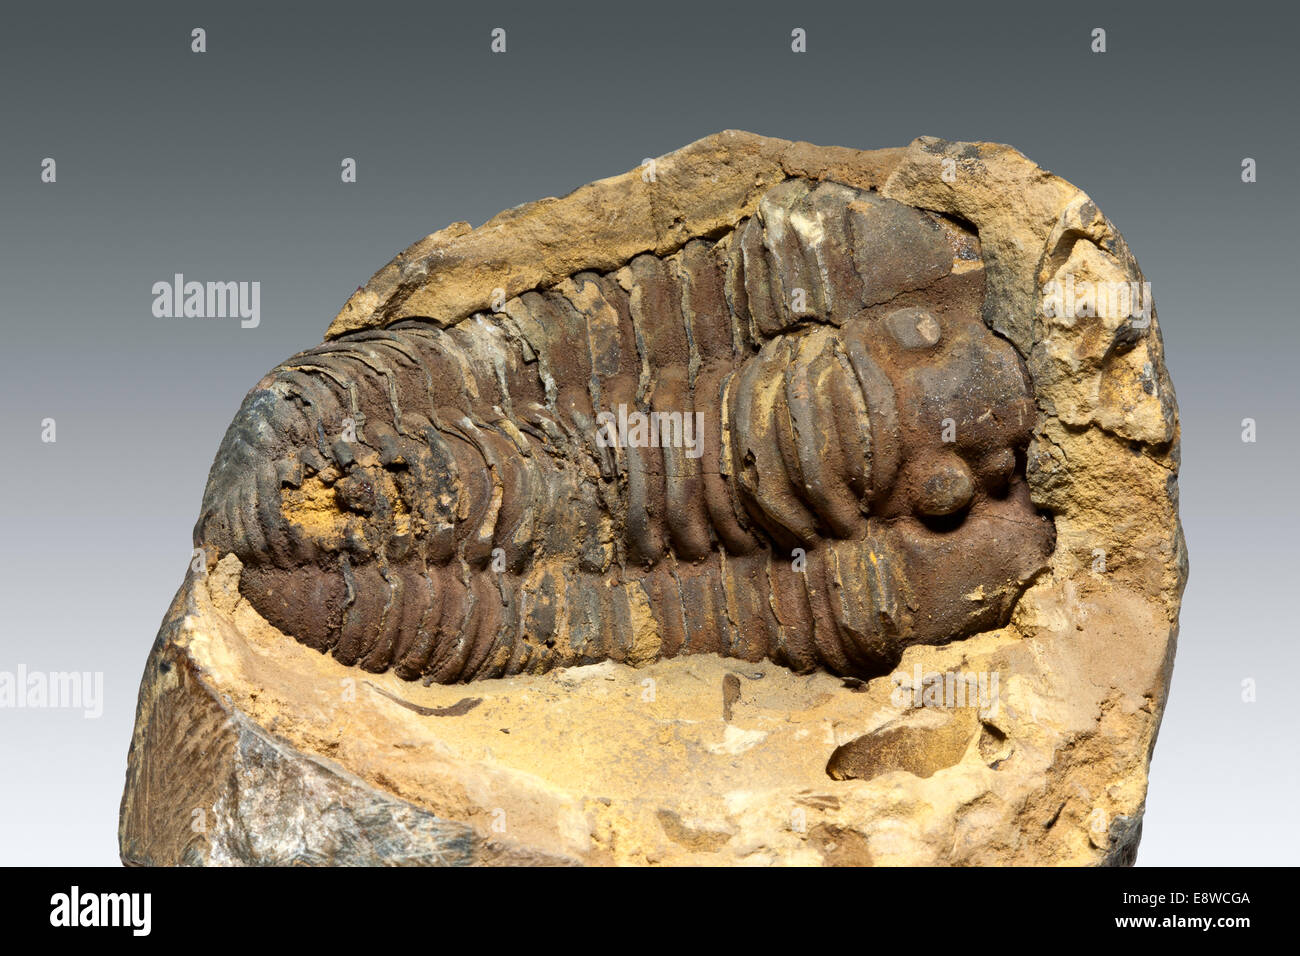 Seul Fossile de trilobite du Maroc sur un fond gris clair Banque D'Images